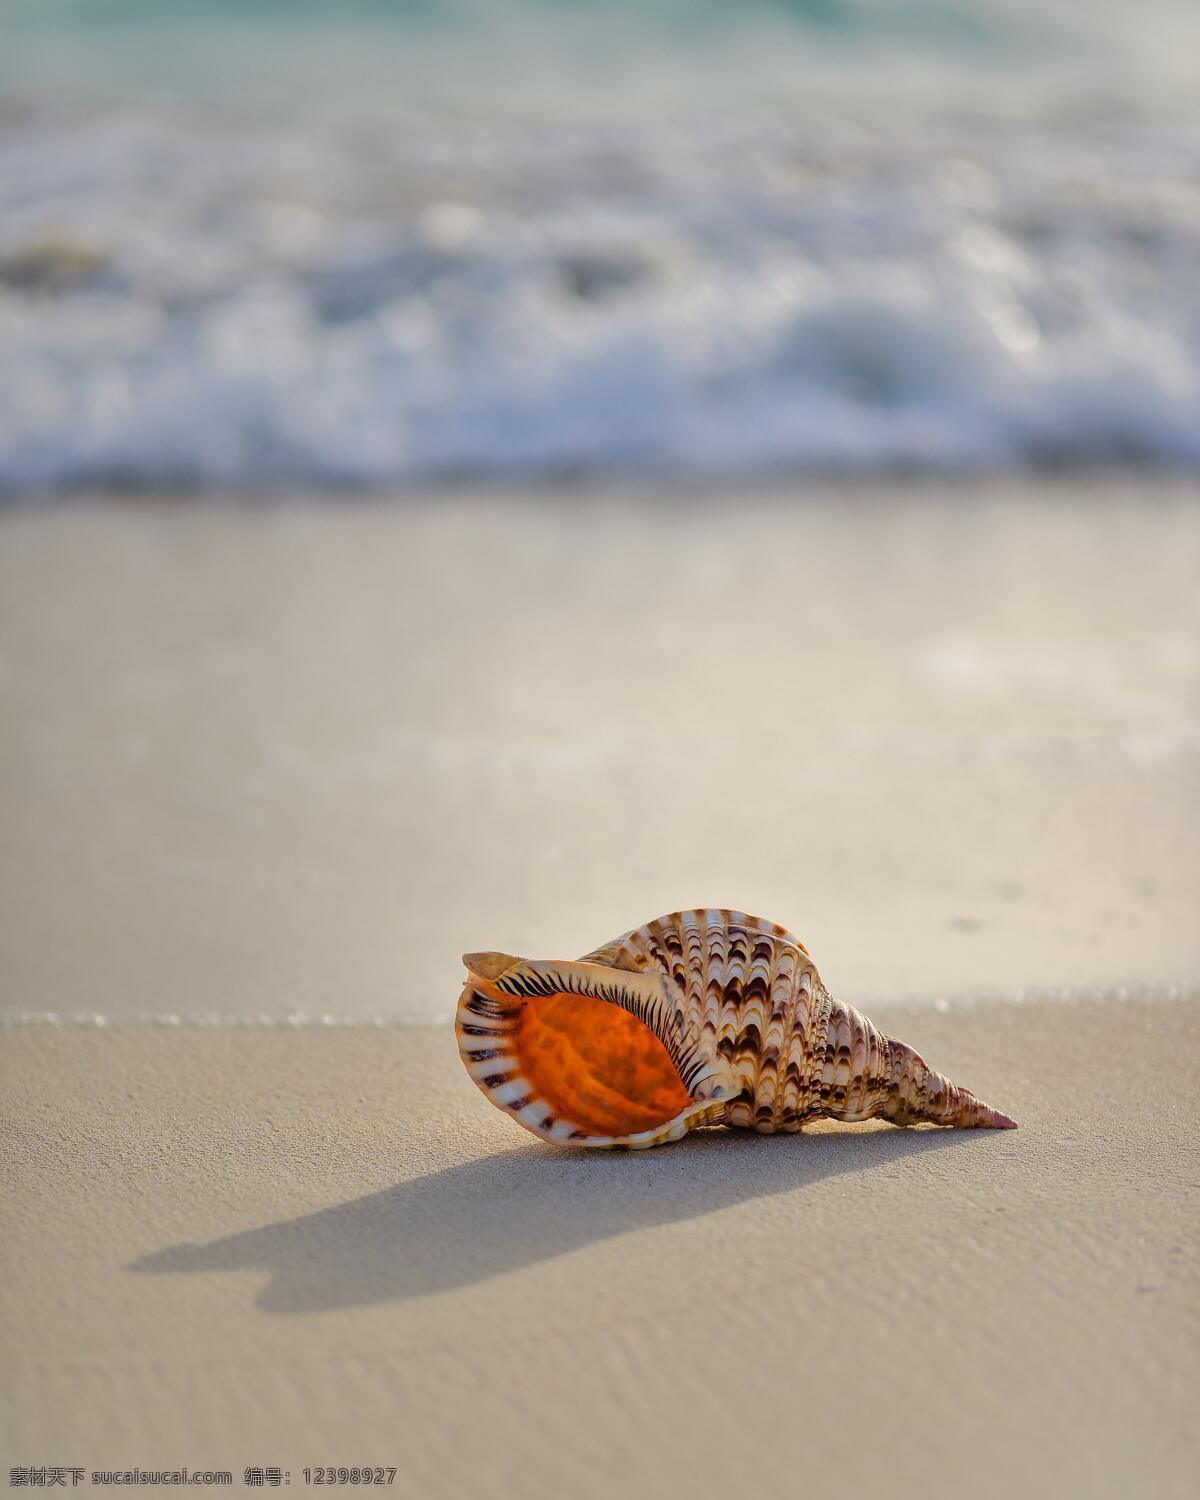 海螺 贝壳 海边 沙滩 特写 静静 躺着 孤单 孤独 文艺 清新 美好 气质 生物世界 海洋生物